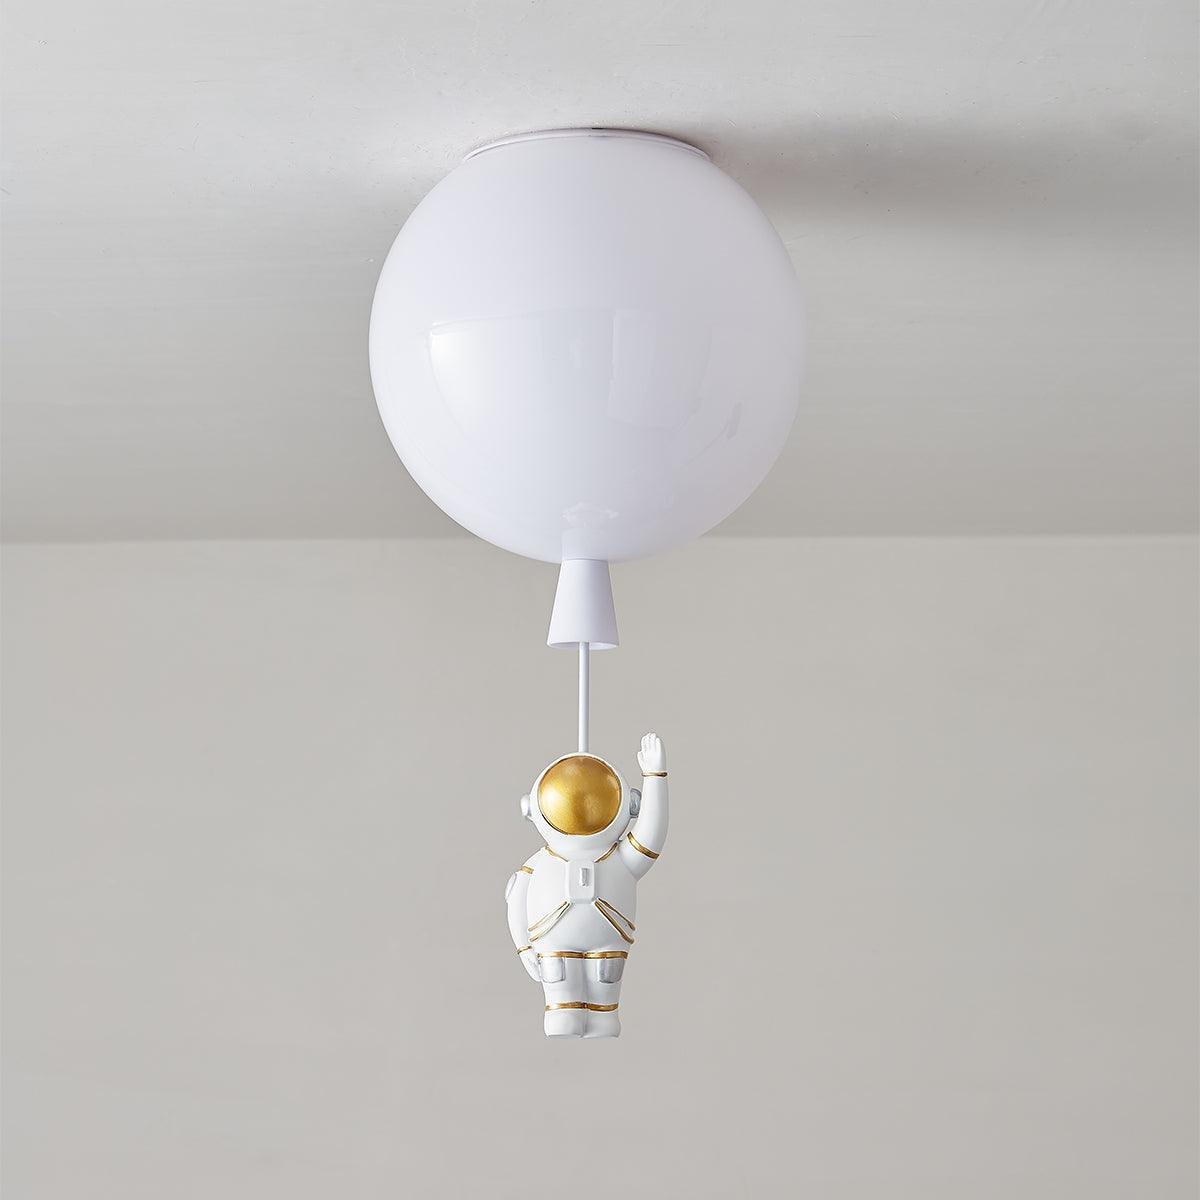 Balloon Design Ceiling Light in a White Glossy Finish, 13.7" (35cm) Diameter